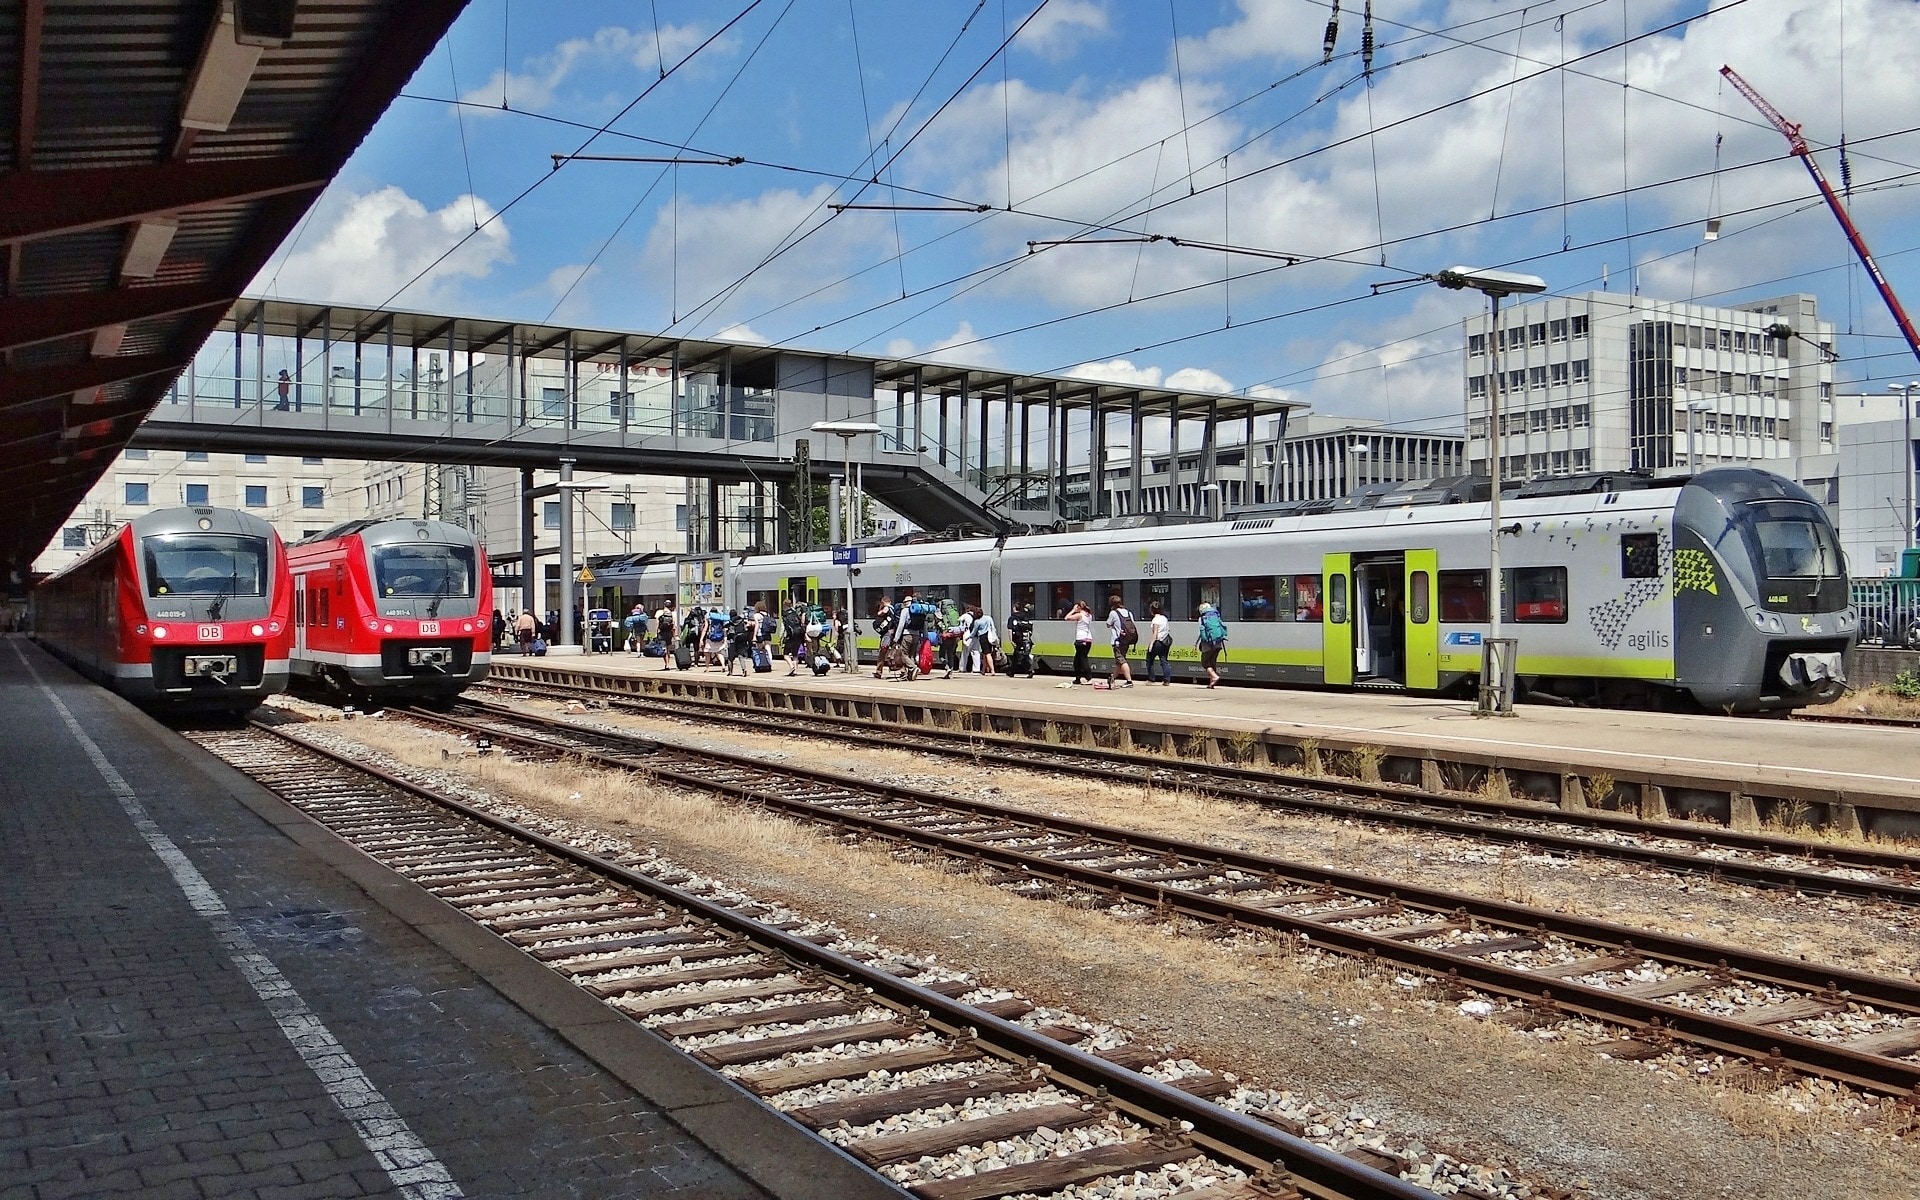 Br 440, Ulm, Railway Station, Agilis, railroad track, public transportation